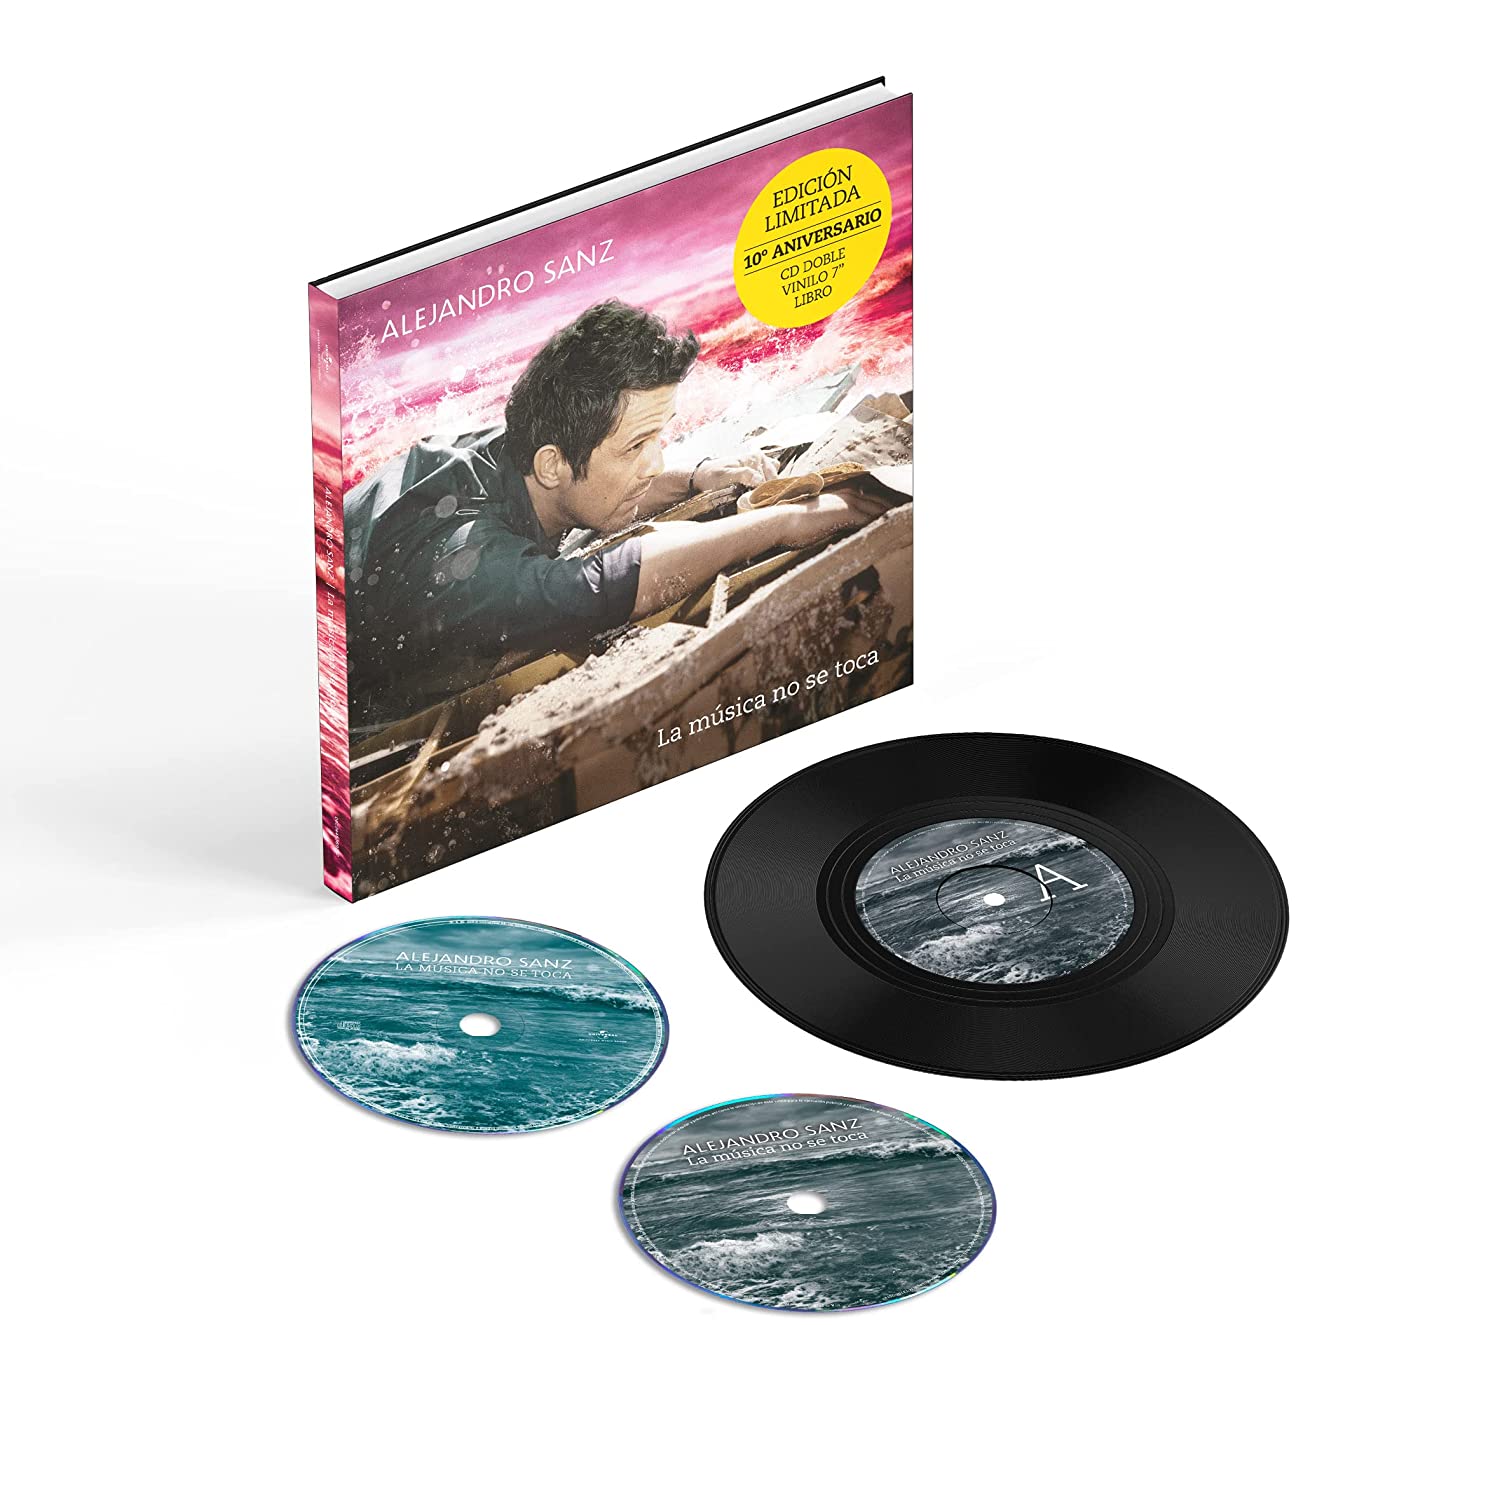 Alejandro Sanz La Musica No Se Toca 10 Aniversario 2CD+Libro+7"